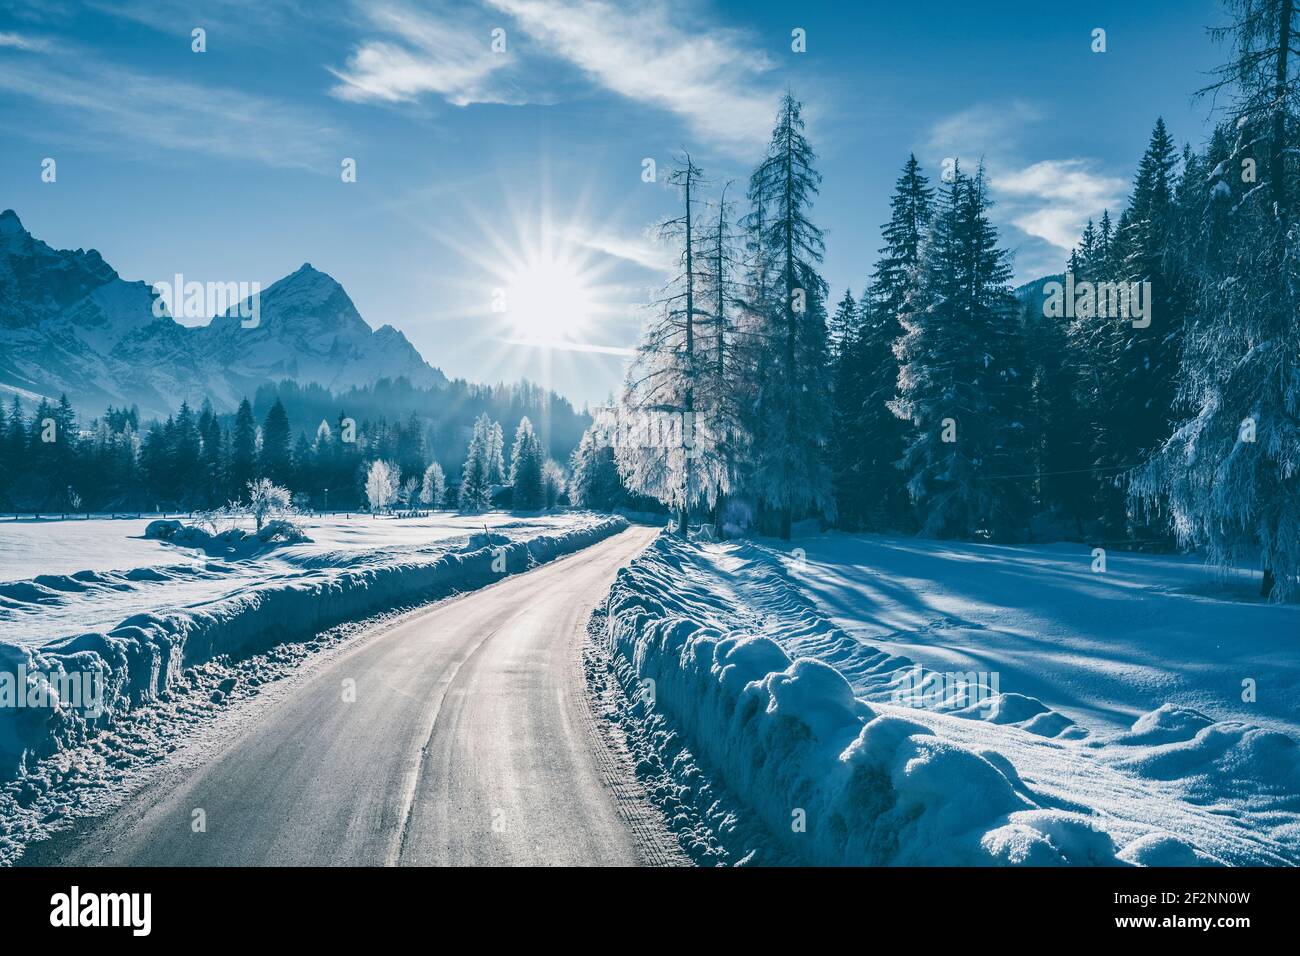 Straße durch eine eisige Winterlandschaft, Bäume mit gefrorenen Ästen, dolomiten und Morgensonne im Hintergrund, Cortina d'Ampezzo, Belluno, Venetien, Italien Stockfoto